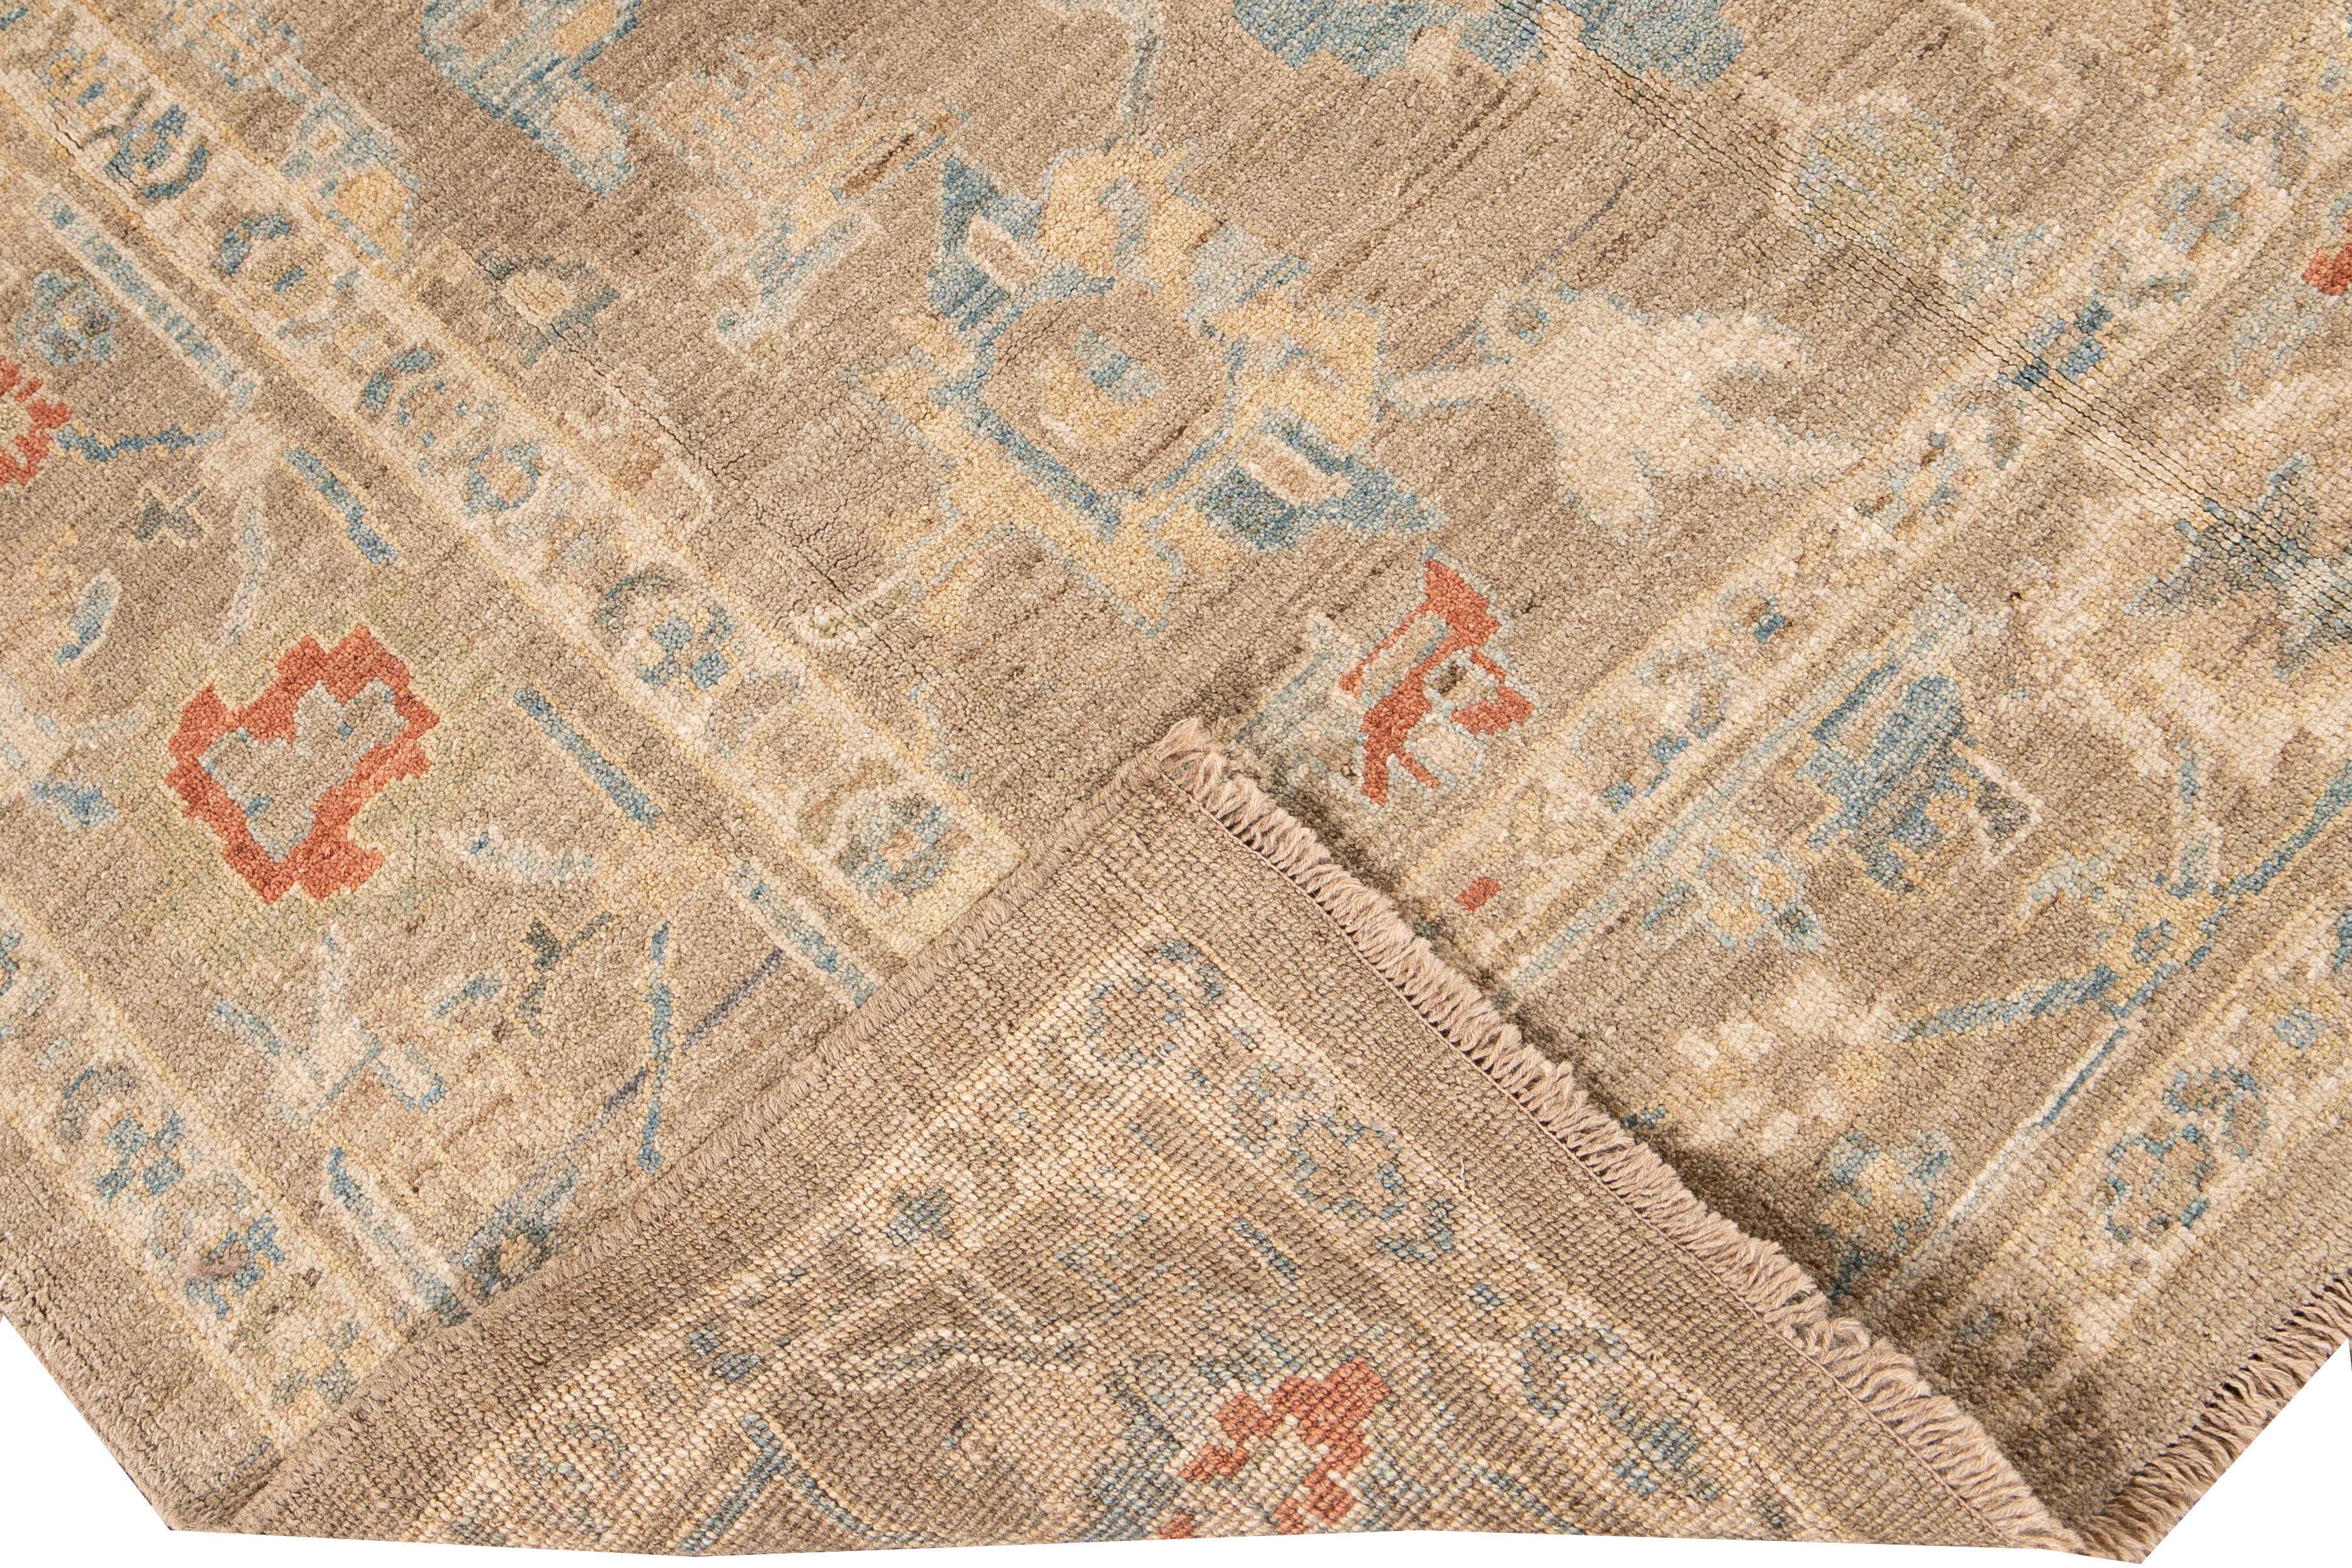 Magnifique tapis moderne Sultanabad en laine nouée à la main avec un champ nu. Ce tapis Sultanabad présente des accents ivoire, jaune, bleu, vert et orange dans un magnifique motif floral géométrique.

Ce tapis mesure : 6'2